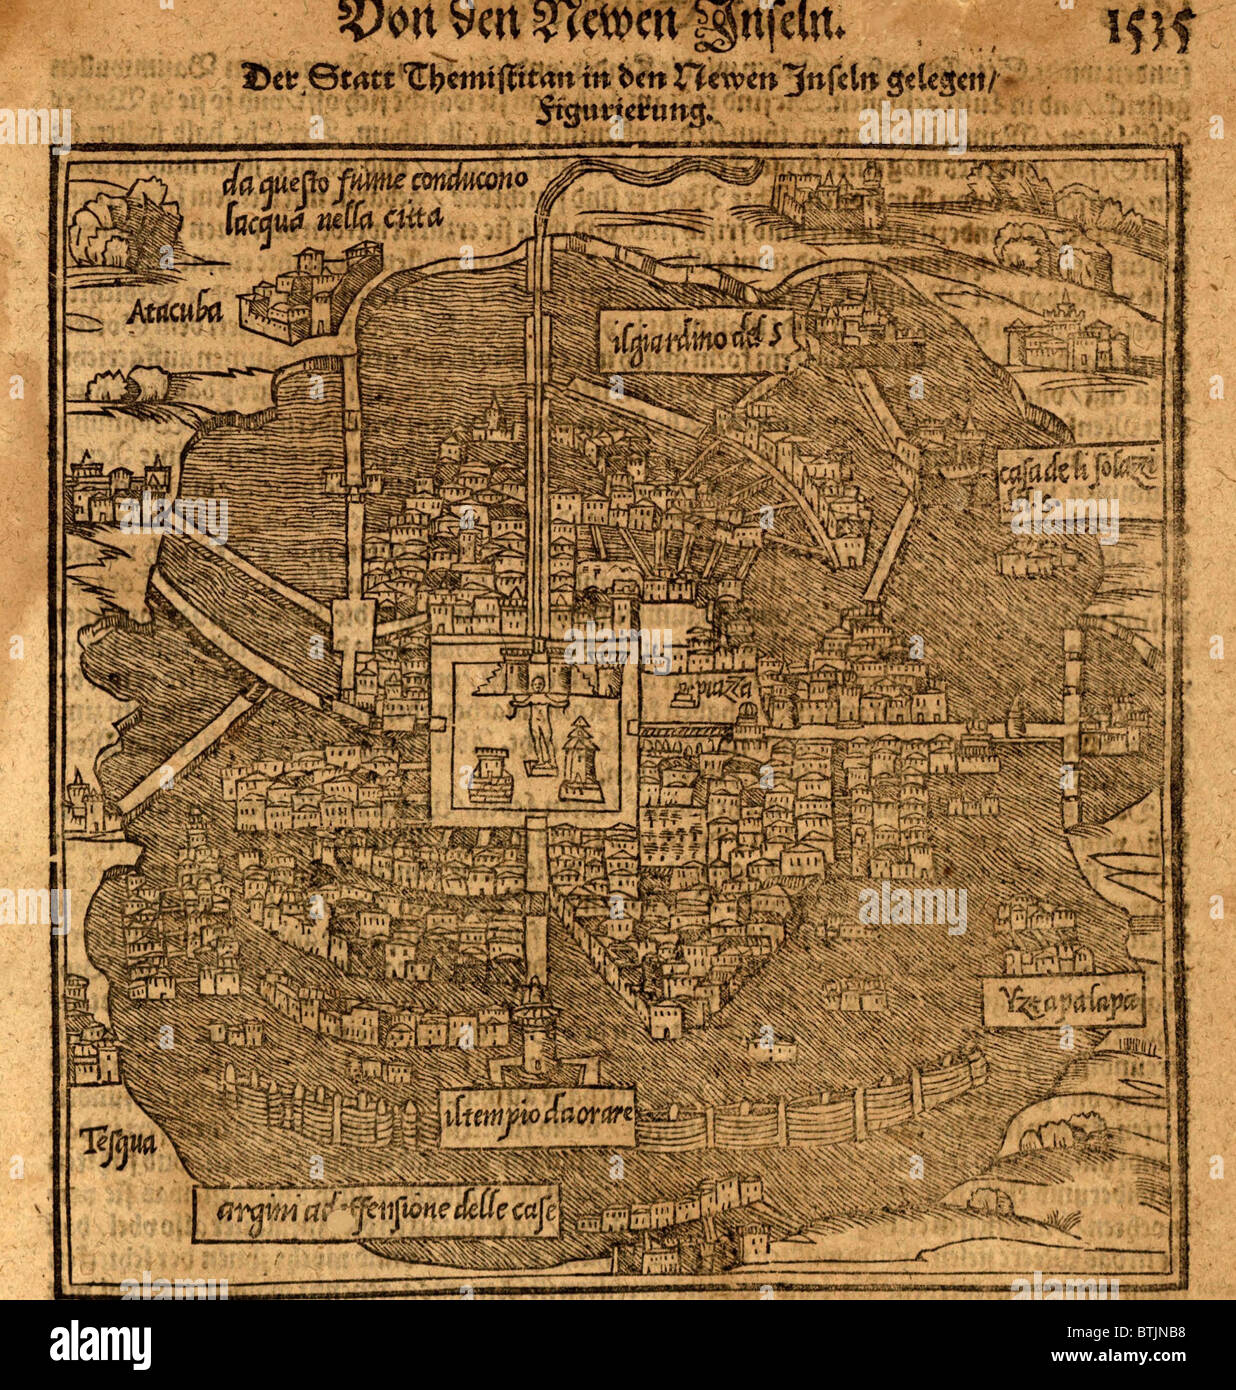 Capitale aztèque, Tenochtitlan, maintenant à Mexico, à partir d'une carte 1597 par Sebastian Munster. Carte montre l'île où l'original a été construit Tenochtitlan, entouré de lacs qui ont plus tard été séché par des colons espagnols. Banque D'Images